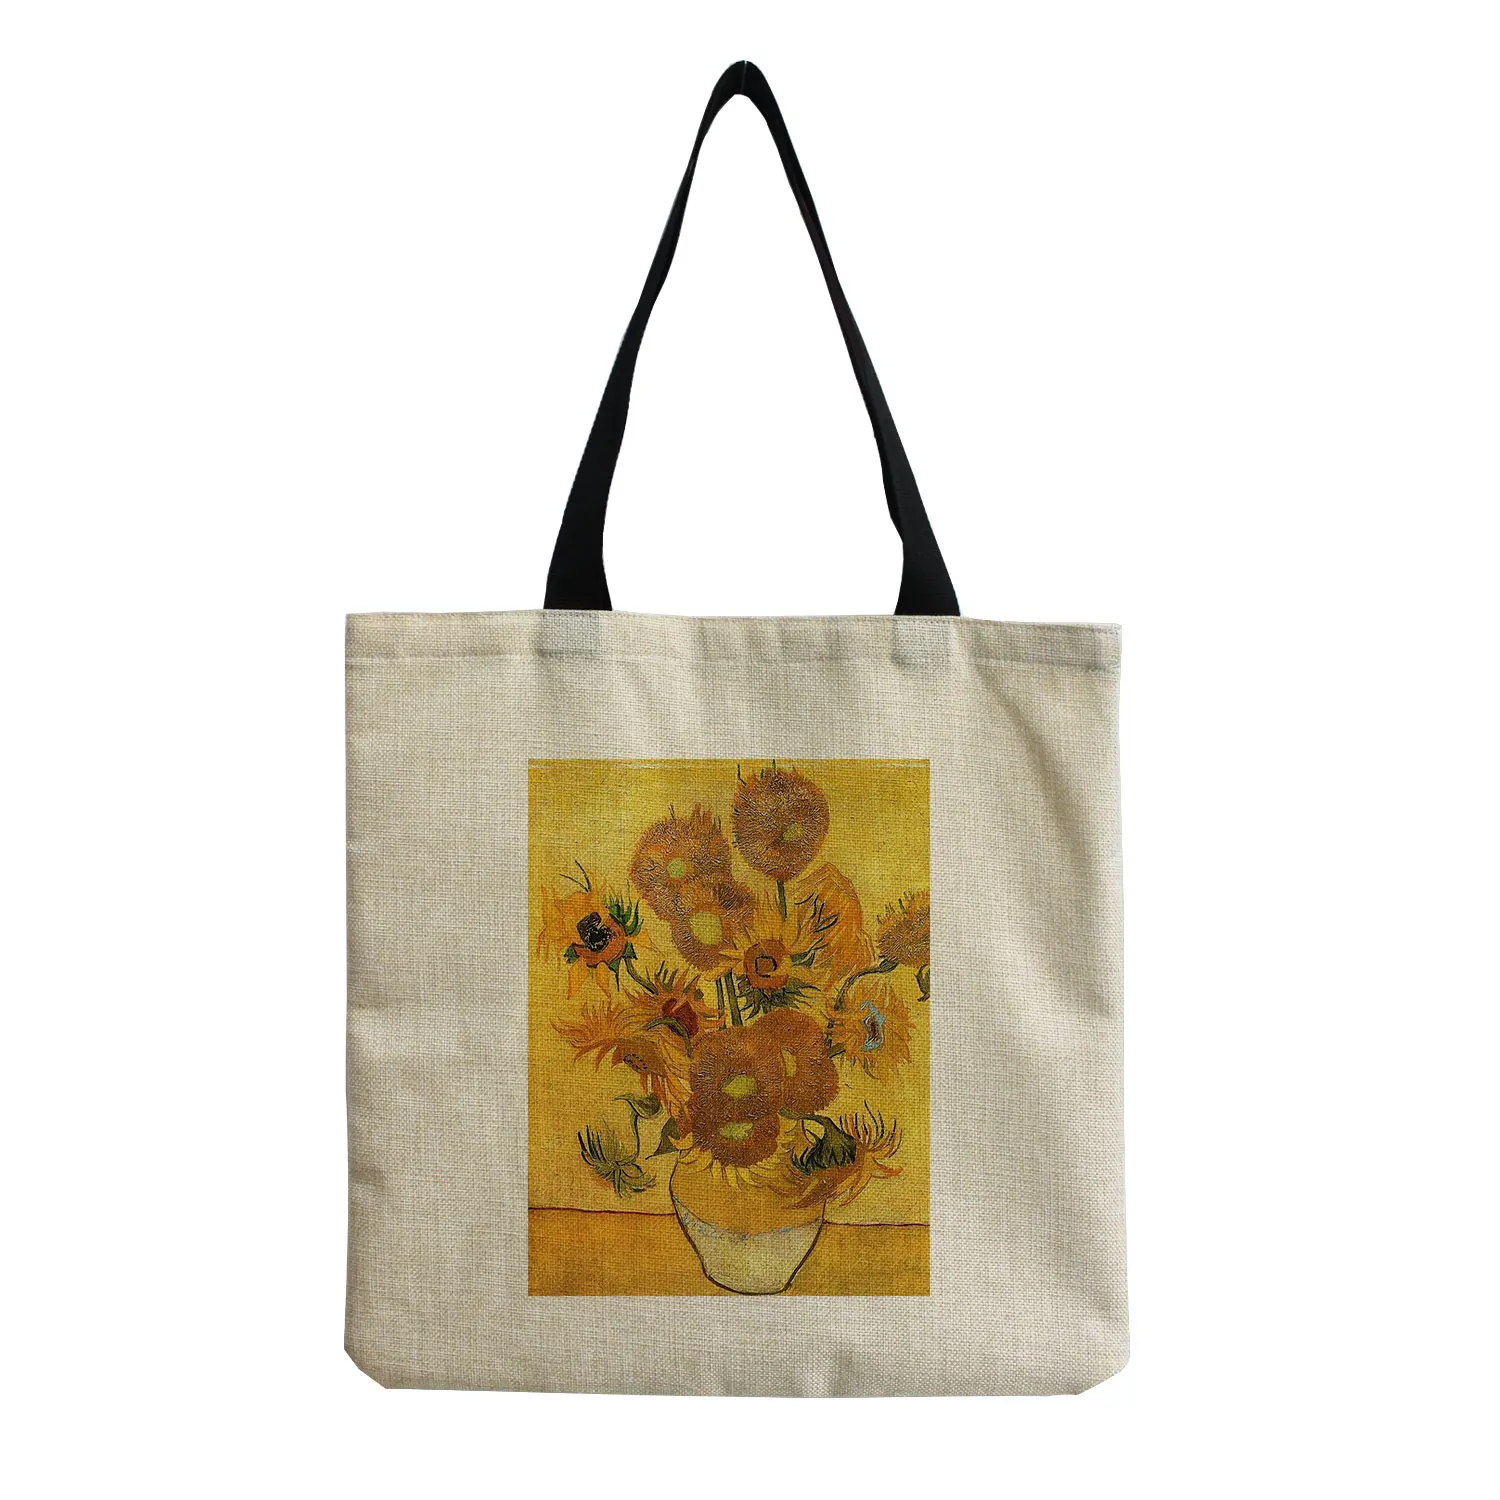 New Van Gogh Oil Painting Retro Tote Bag Retro Art Fashion Travel Bag Women Leisure Eco Shopping High Quality Foldable Handbag